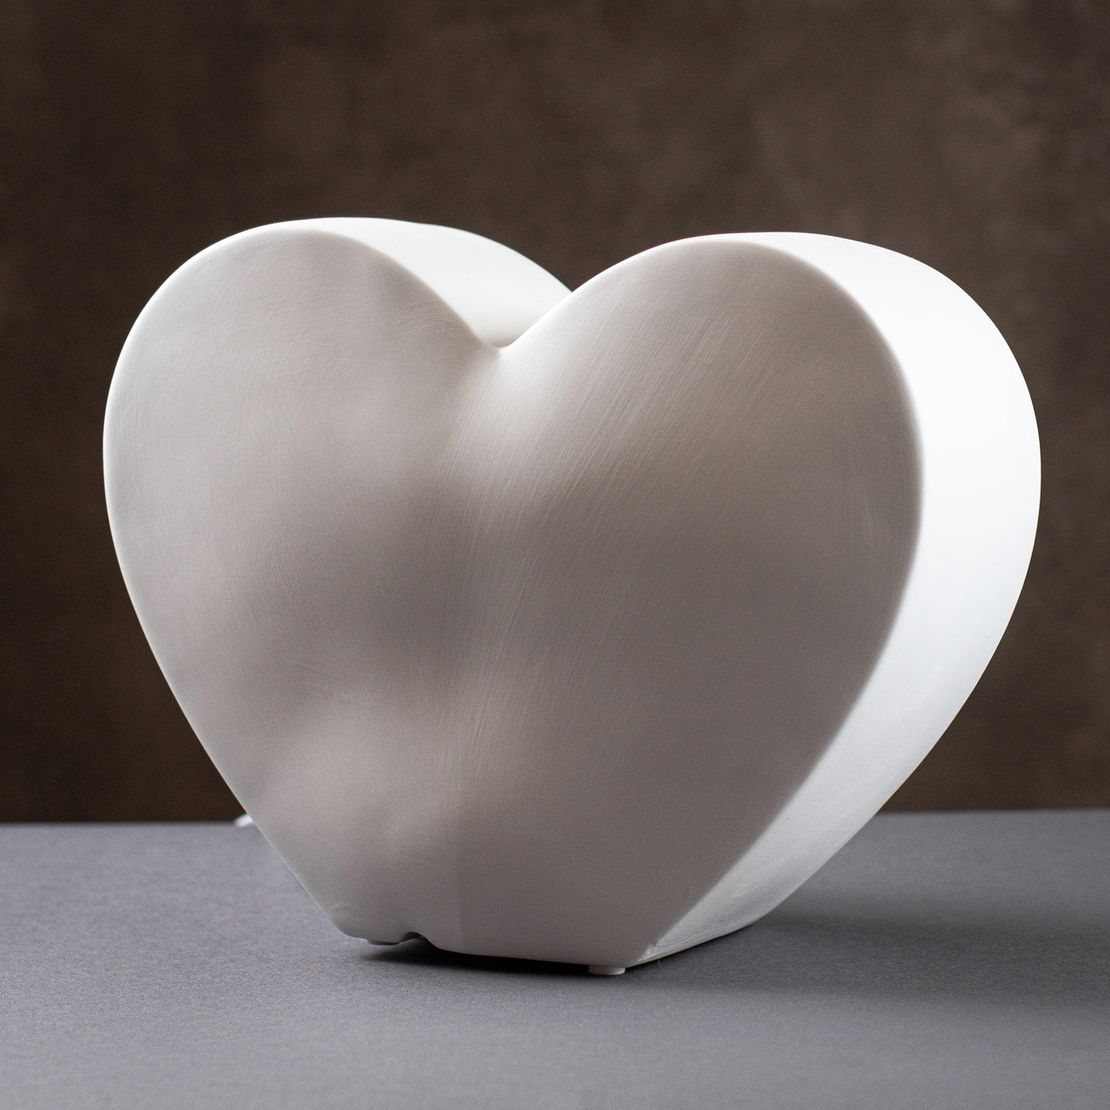 Настільна порцелянова лампа-нічник "Серце", ручна робота, з регулюванням кольору освітлення 16 кольорів!